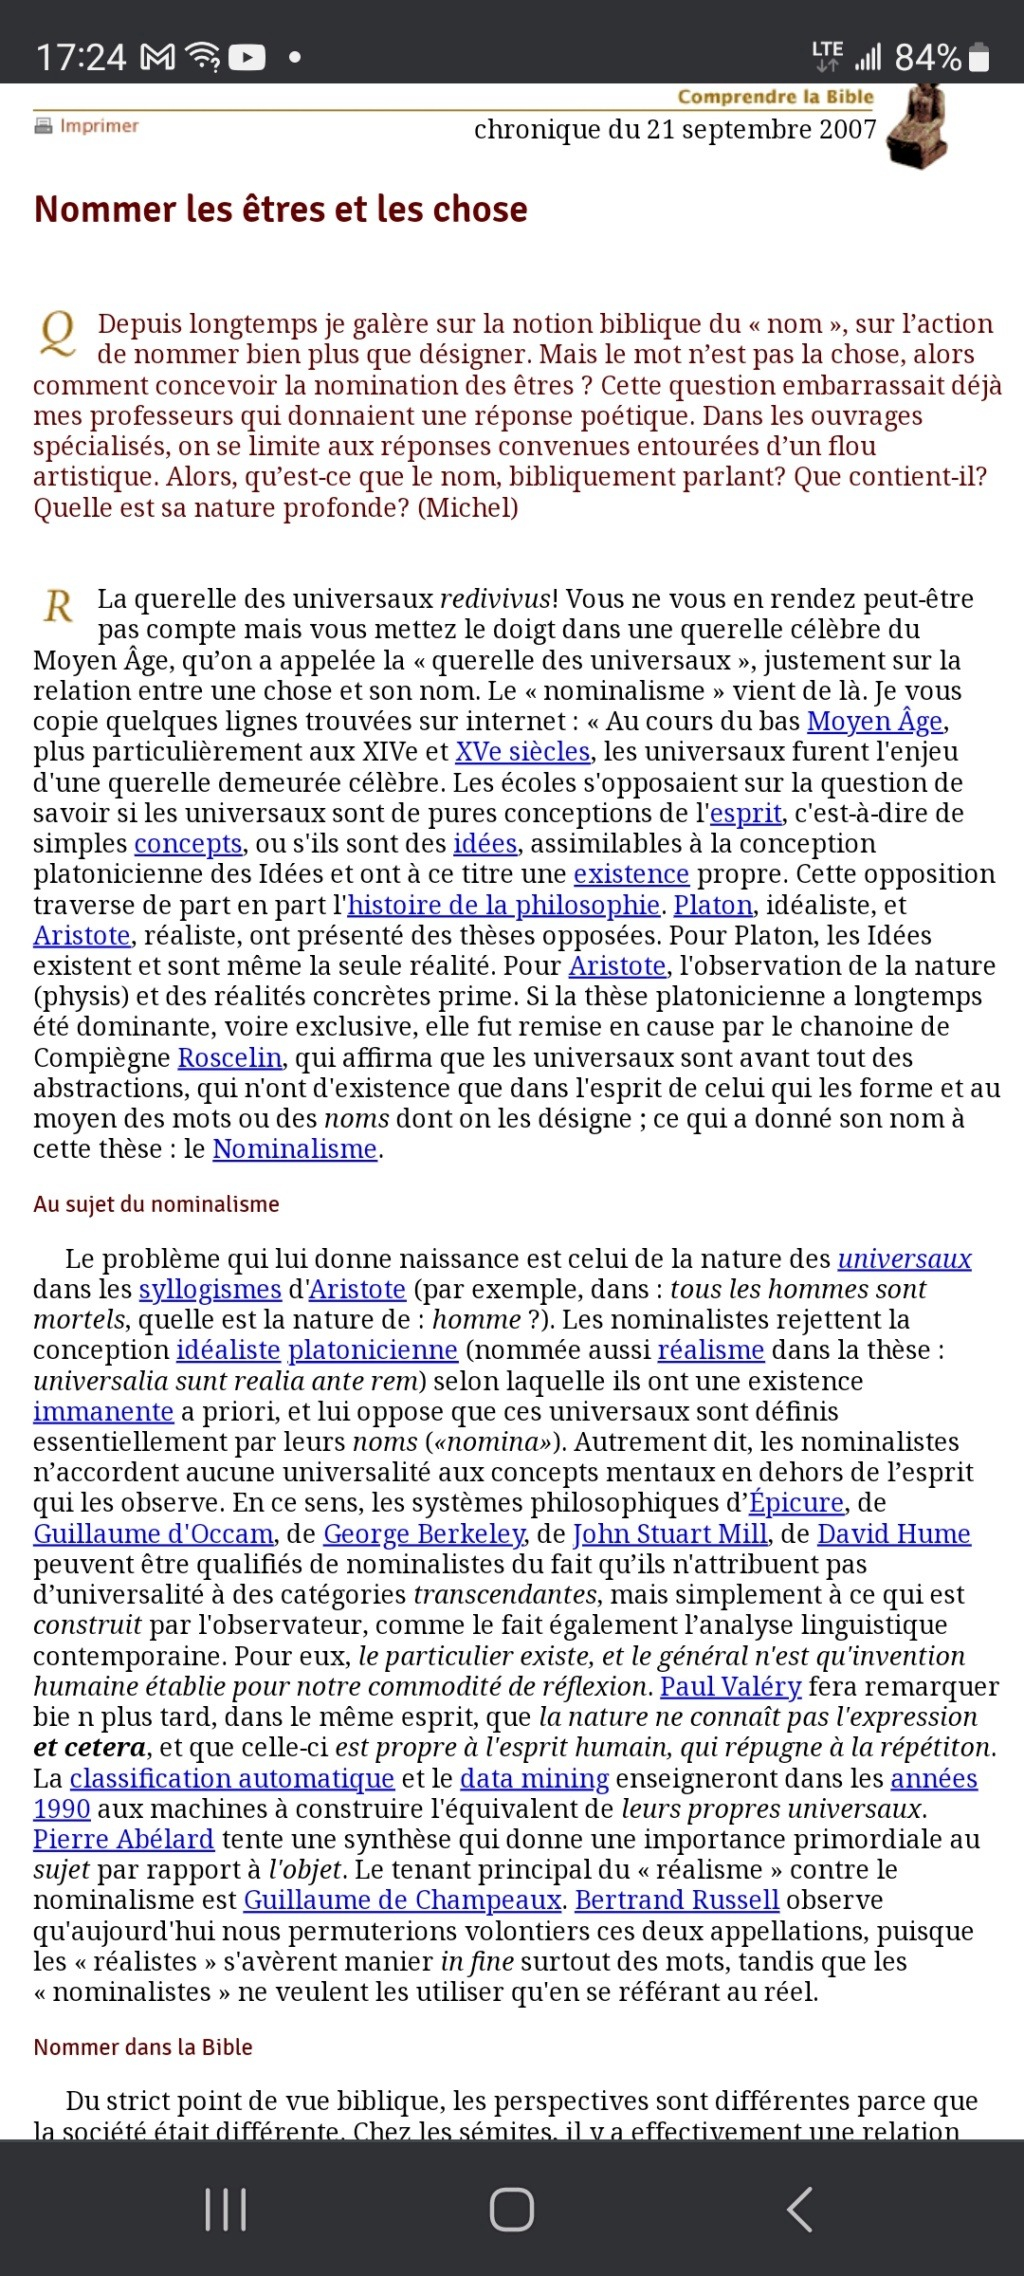 Inventaire des NT français traduisant différemment Kurios pour Dieu et Jésus - Page 4 Scree114